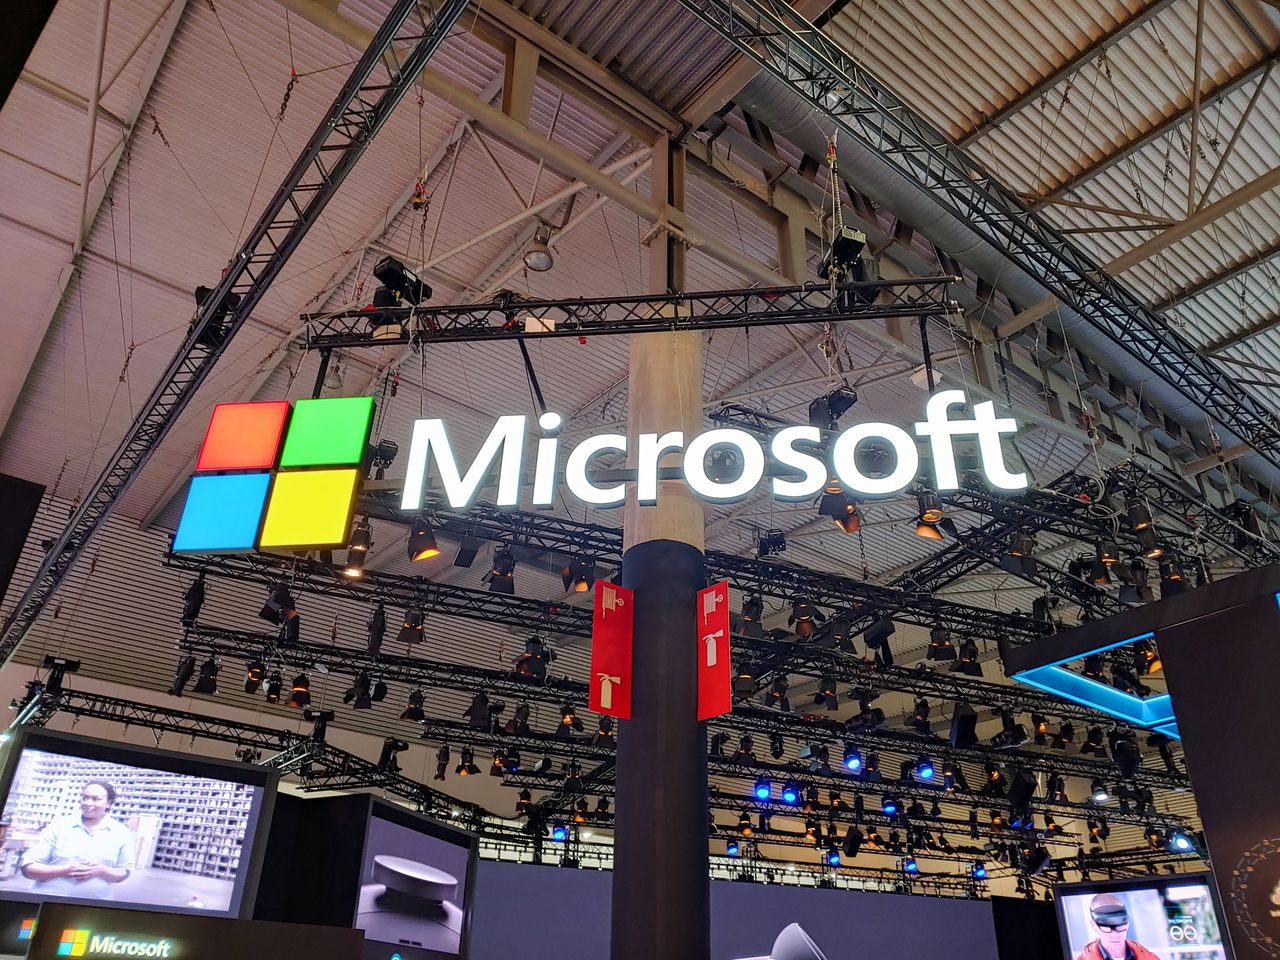 Microsoft Holo Lens 2 na MWC 2019. Nowe gogle łączące świat wirtualny z rzeczywistością